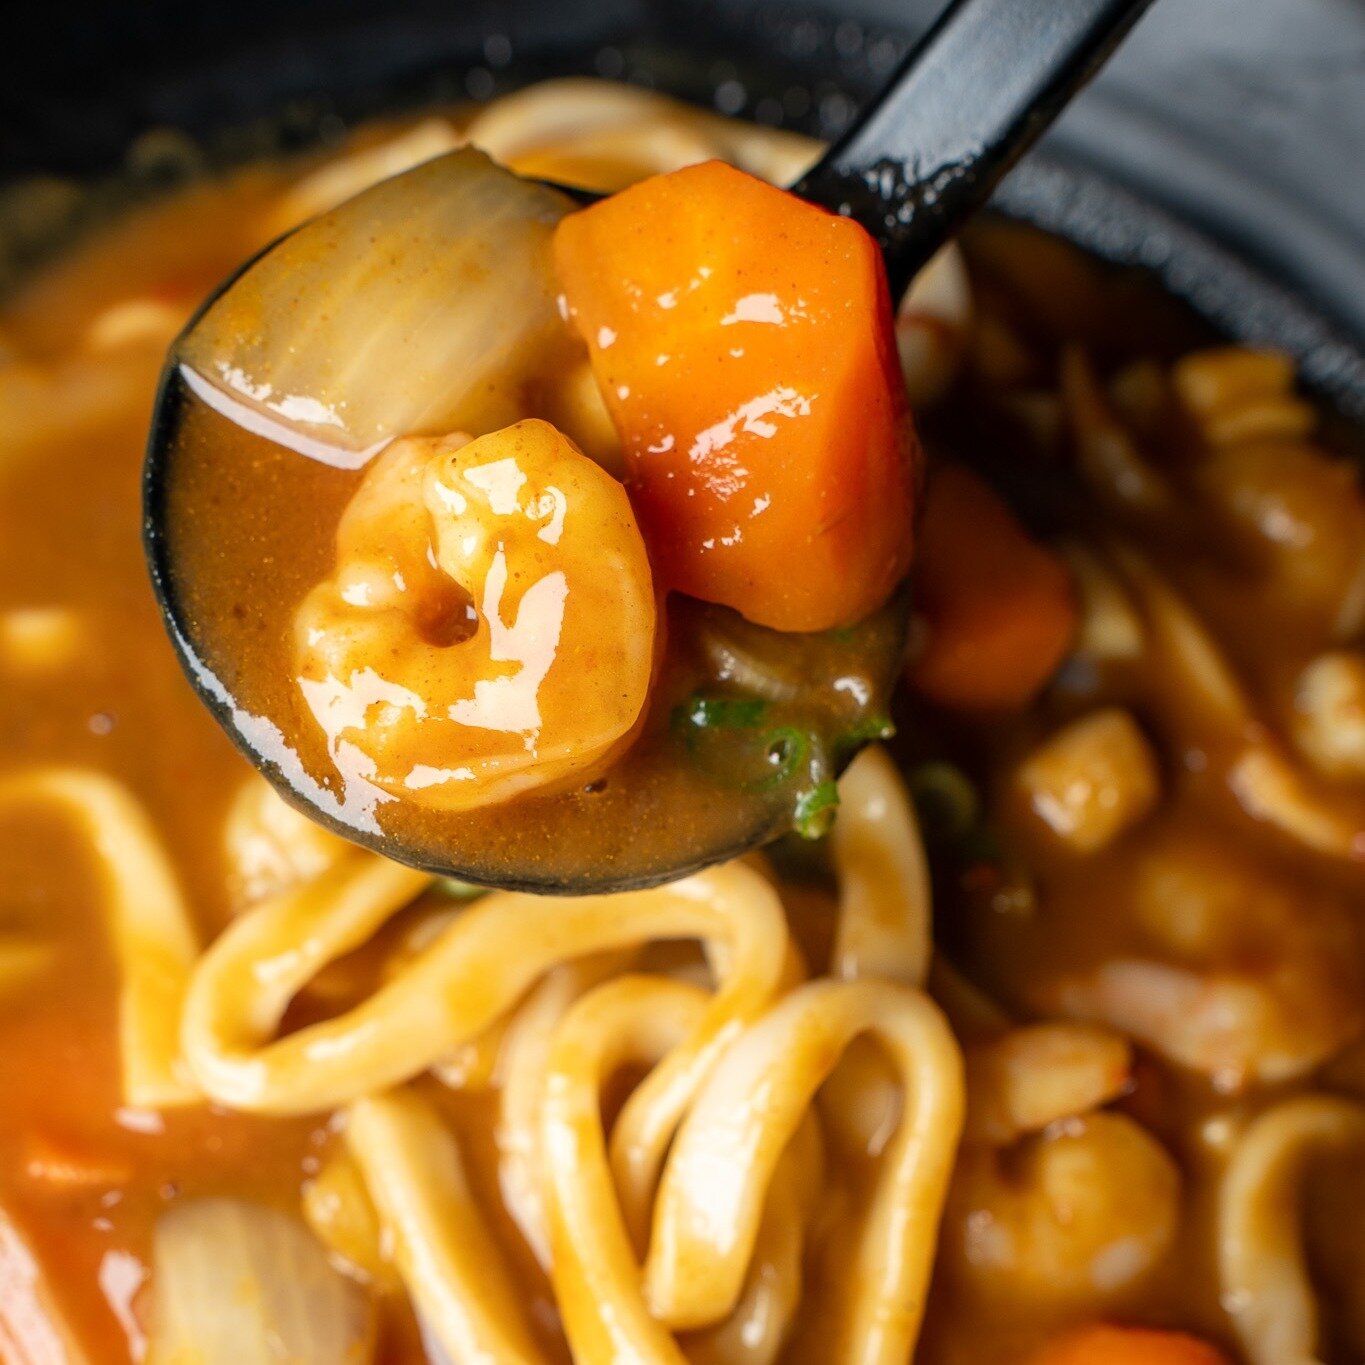 Udon, the cure for any craving! Order now! #LAFoodie 🍲 

👇 Freshly homemade noodles 
◾️◽️◾️◽️◾️◽️◾️◽️◾️◽️
🍜 ᴍᴀʀᴜɢᴀᴍᴇ ᴍᴏɴᴢᴏ ʟᴀ
⏰ ᴍᴏɴ - ᴛʜᴜʀꜱ : 11:30 ᴀᴍ - 9:00 ᴘᴍ 
⏰ ꜰʀɪ - ꜱᴜɴ: 11:30 ᴀᴍ - 10:00 ᴘᴍ
📍 329 ᴇᴀꜱᴛ 1ꜱᴛ ꜱᴛ. ʟɪᴛᴛʟᴇ ᴛᴏᴋʏᴏ, ʟᴀ 
 📞 (213) 346 